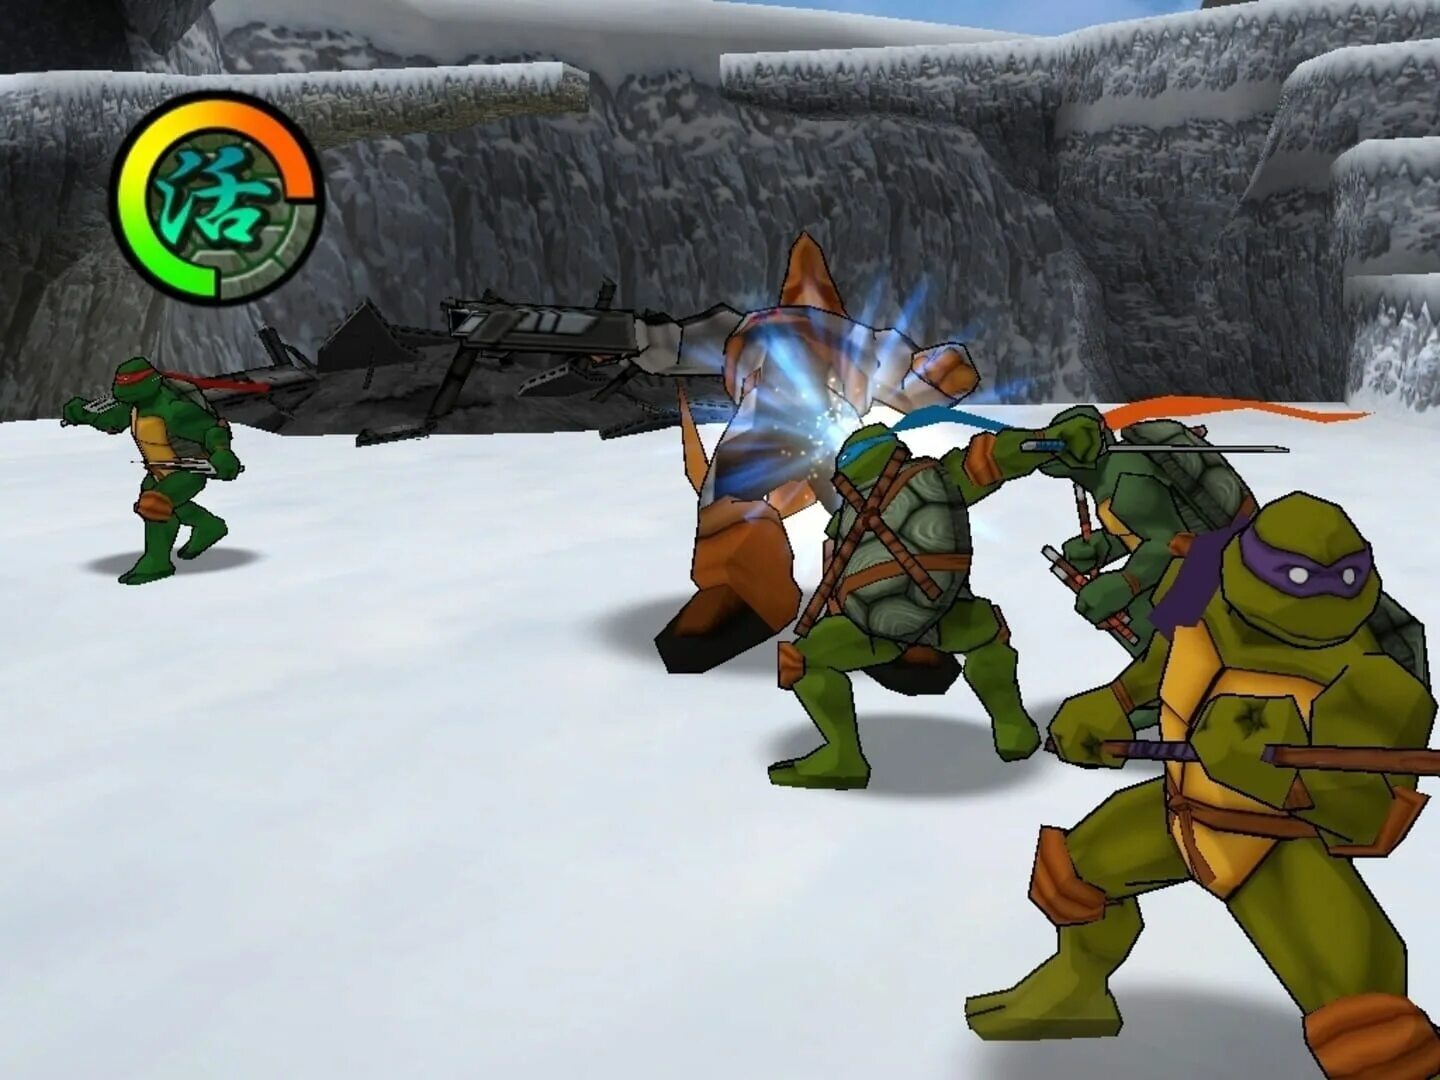 TMNT 2 Battle Nexus. Teenage Mutant Ninja Turtles 2 Battle Nexus. TMNT 2003 2 Battle Nexus. Teenage Mutant Ninja Turtles (игра, 2003). Чит версия черепашки ниндзя